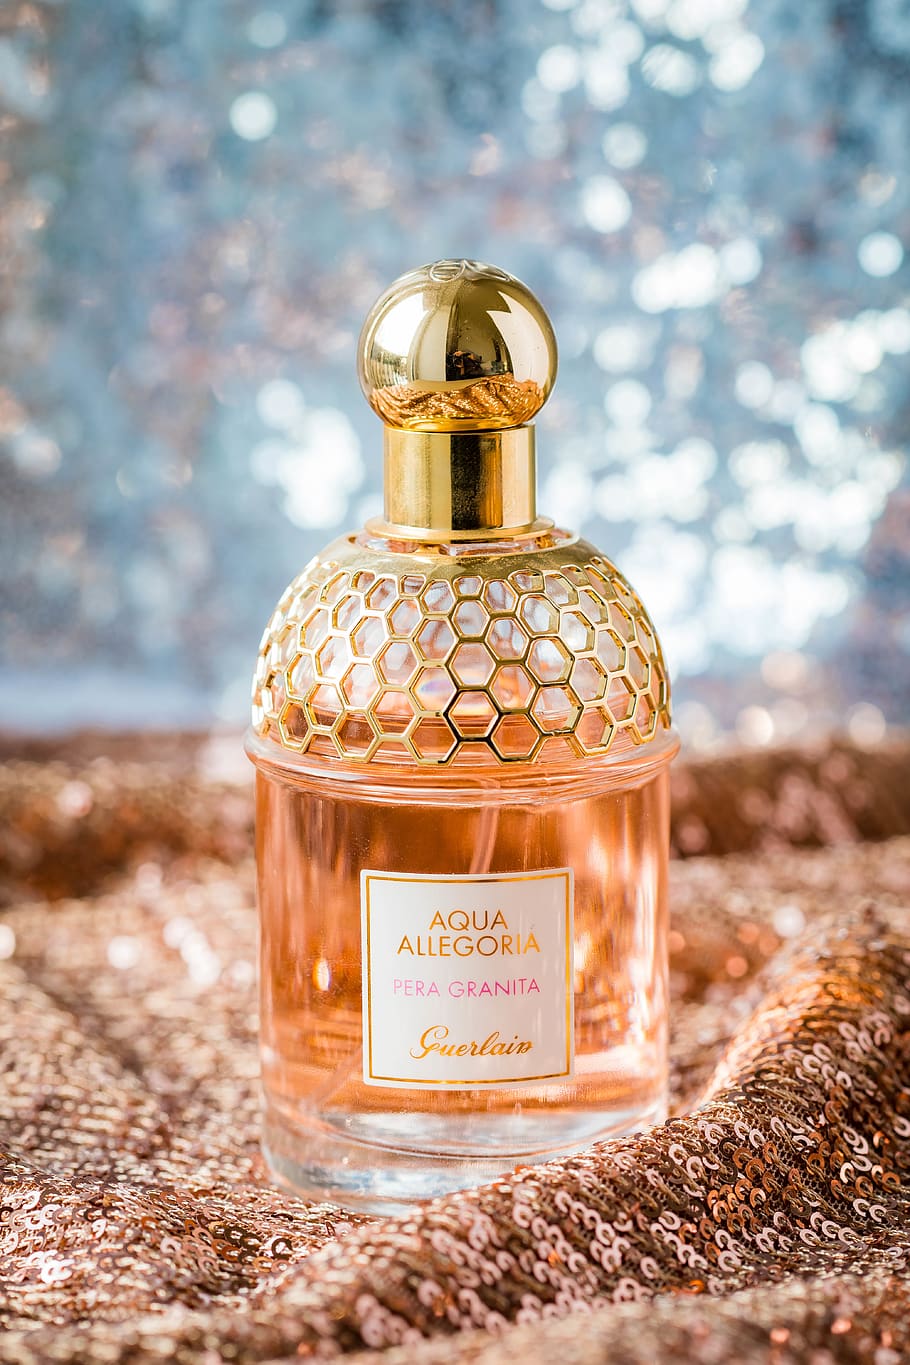 Aqua Allegoria Perfume Bottle, aroma, aromatic, blur, close-up